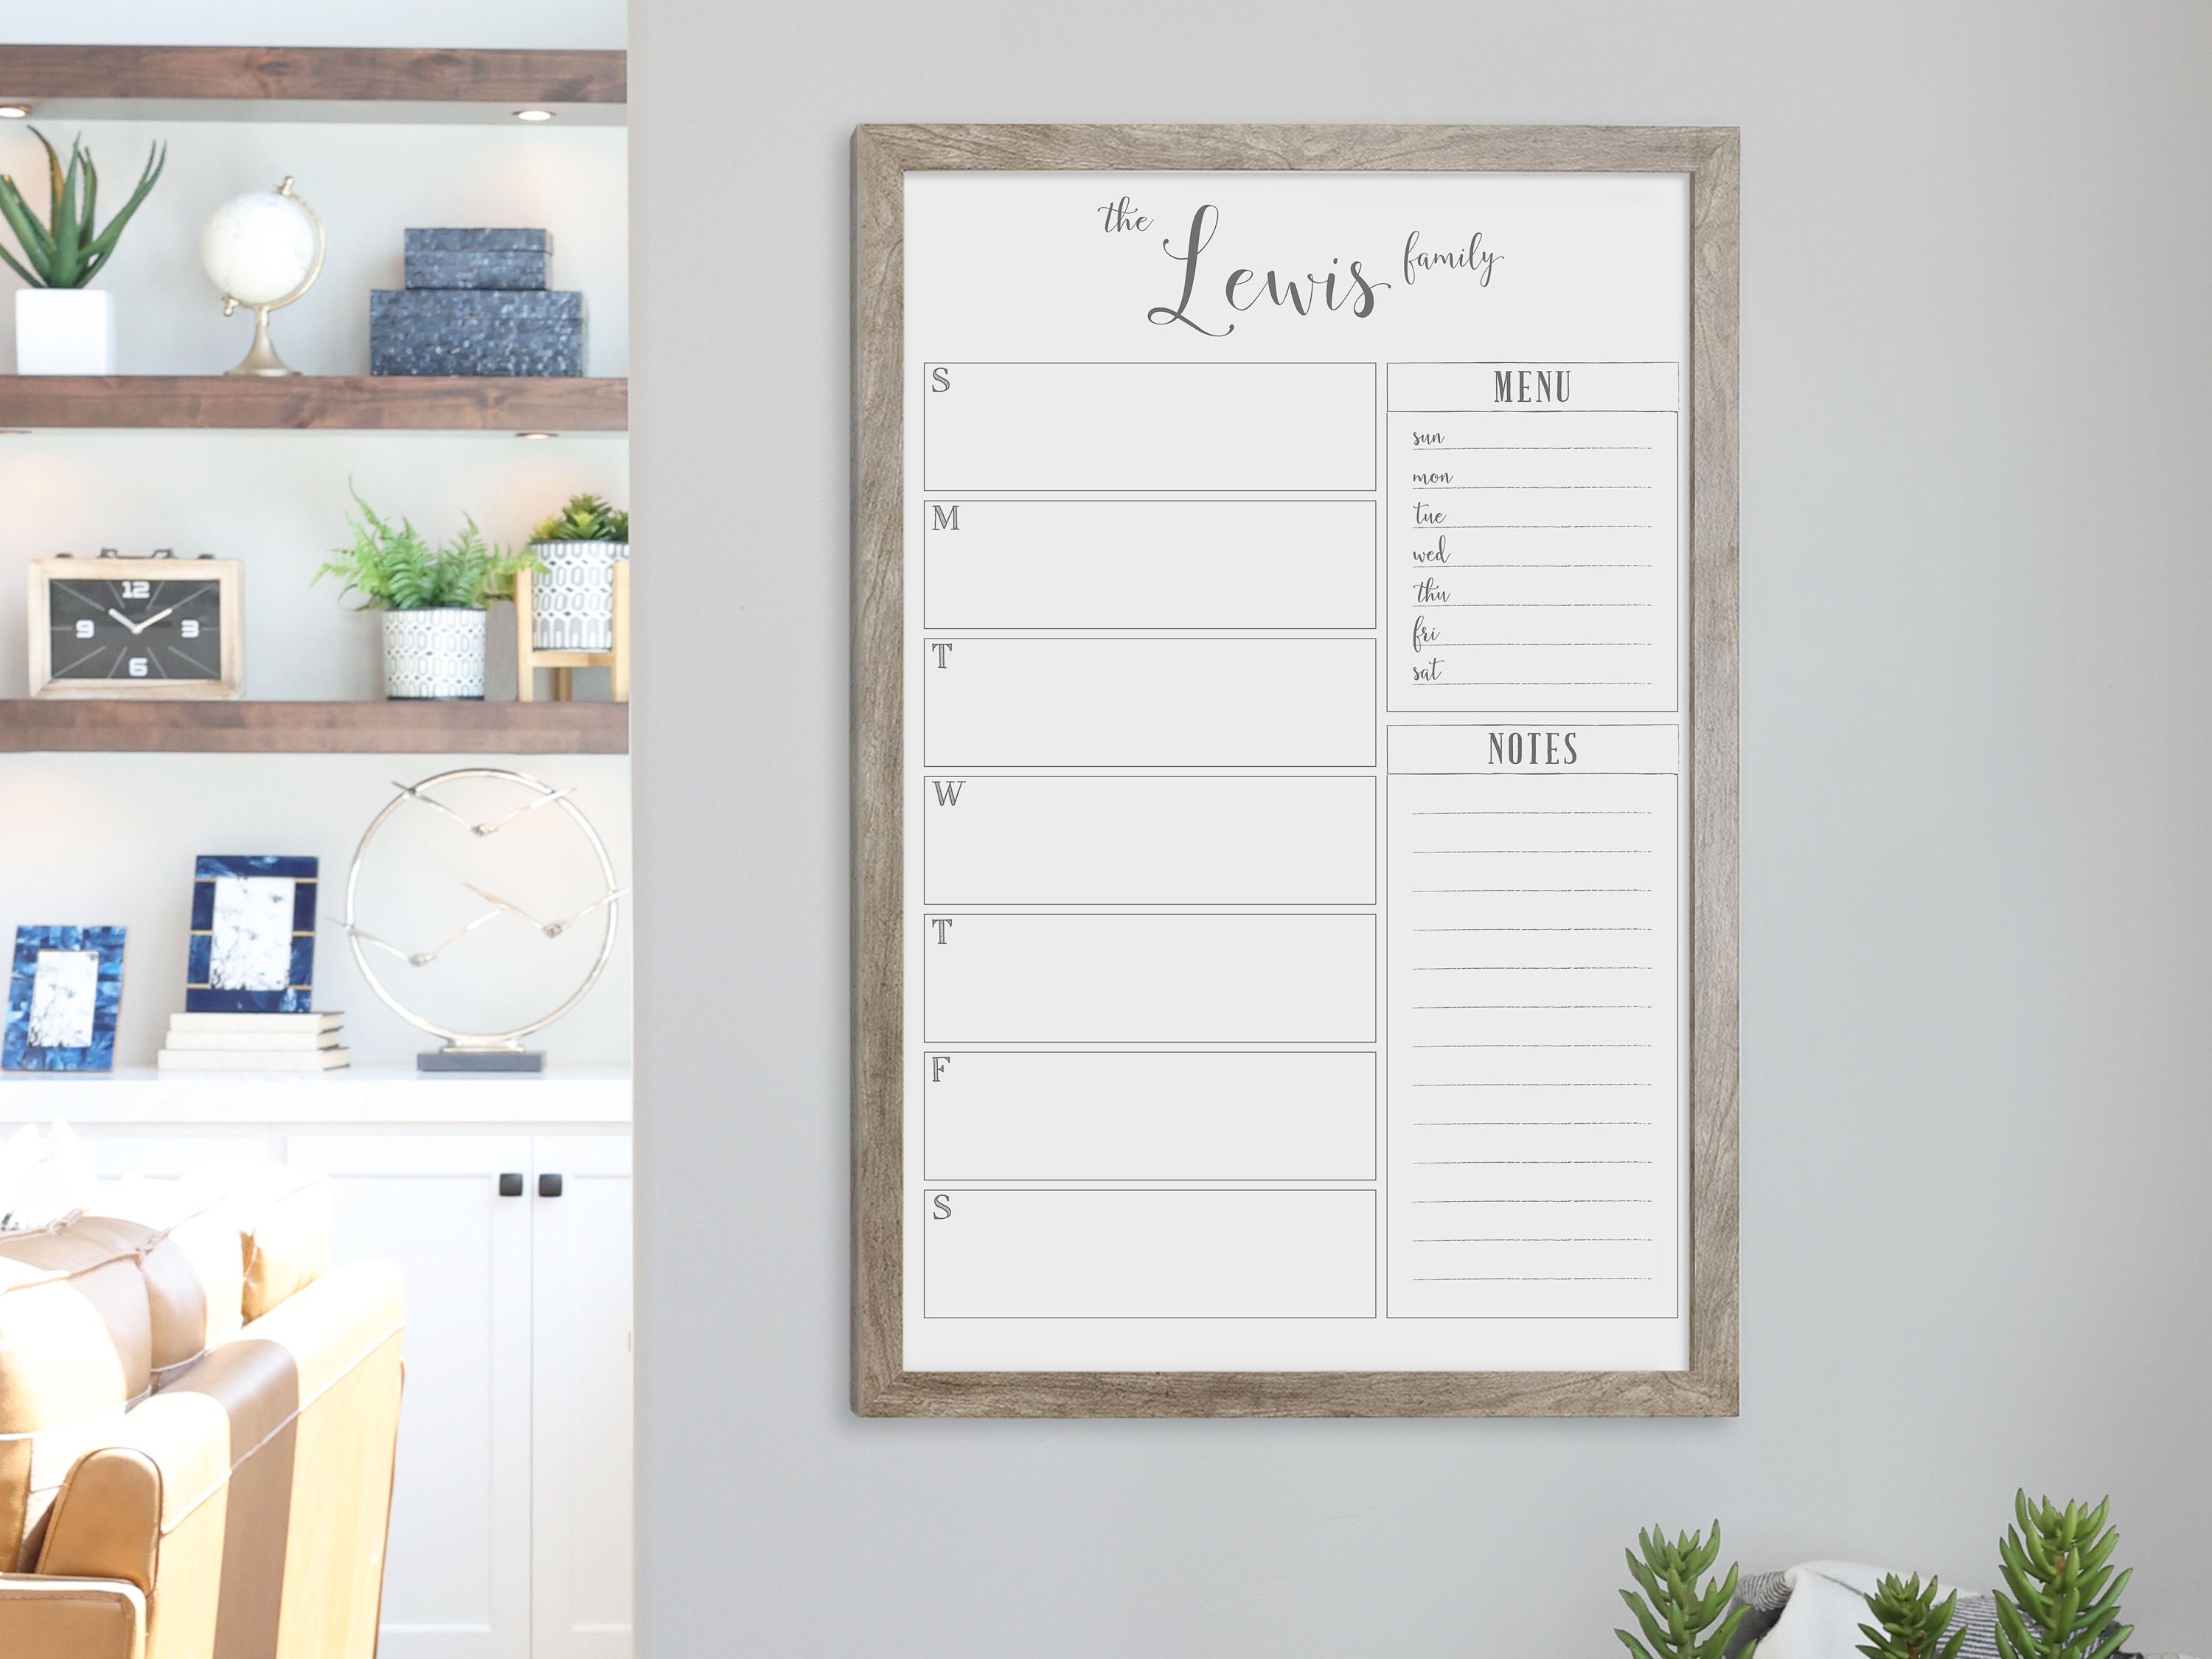 Chalkboard Calendar Sign, Office Calendar Sign, Chalkboard Calendar, Office  Organization, Monthly Calendar, Hanging Calendar, Kitchen Decor 